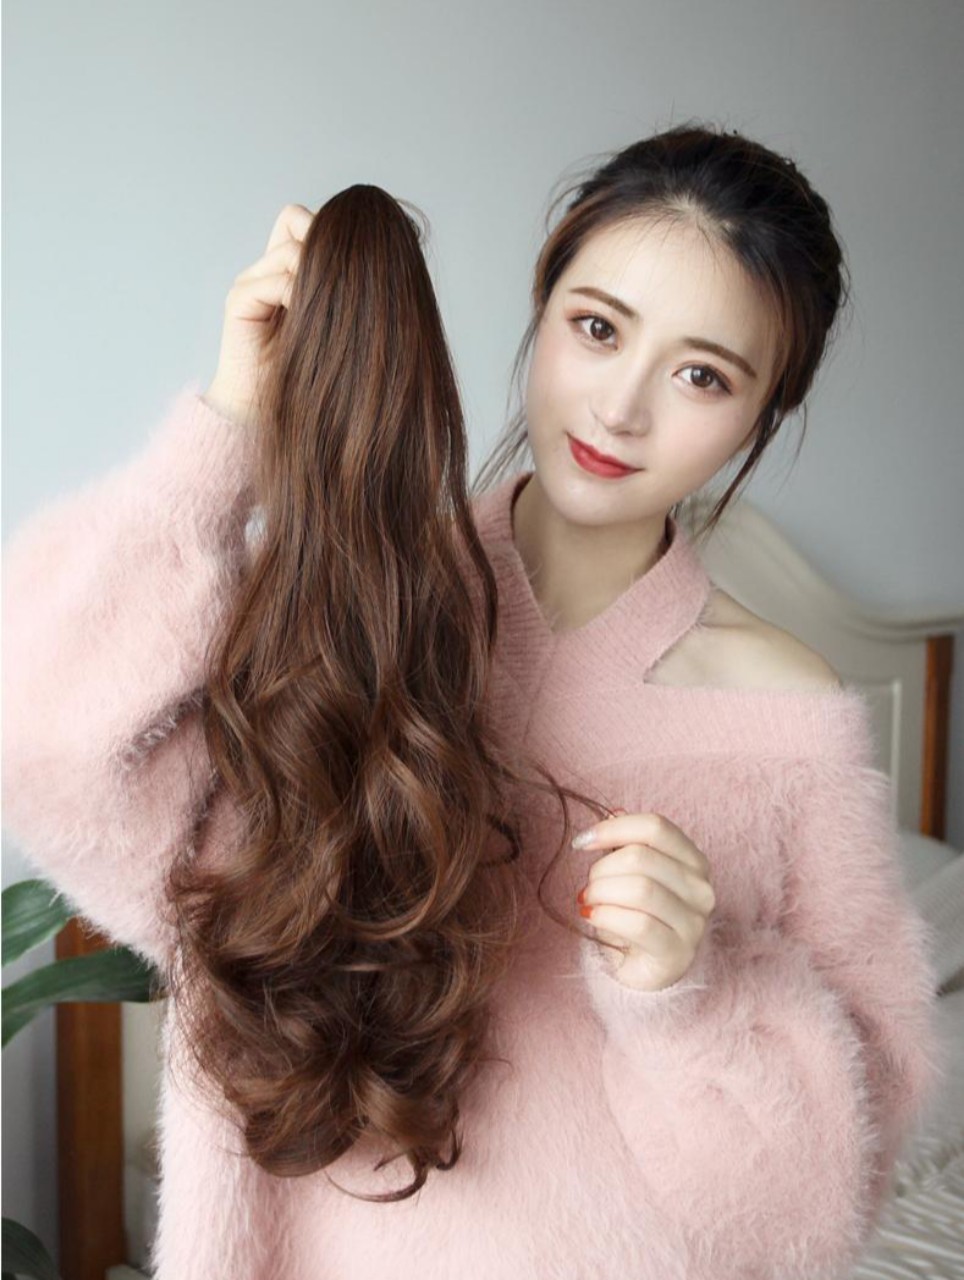 Tóc giả ngoặm xoăn kiểu Hàn Quốc siêu xinh chất tóc tơ Hàn cao cấp loại 1, chịu nhiệt tốt có thể bấm uốn, duỗi, gội. giống tóc thật 100%. Cam kết y hình